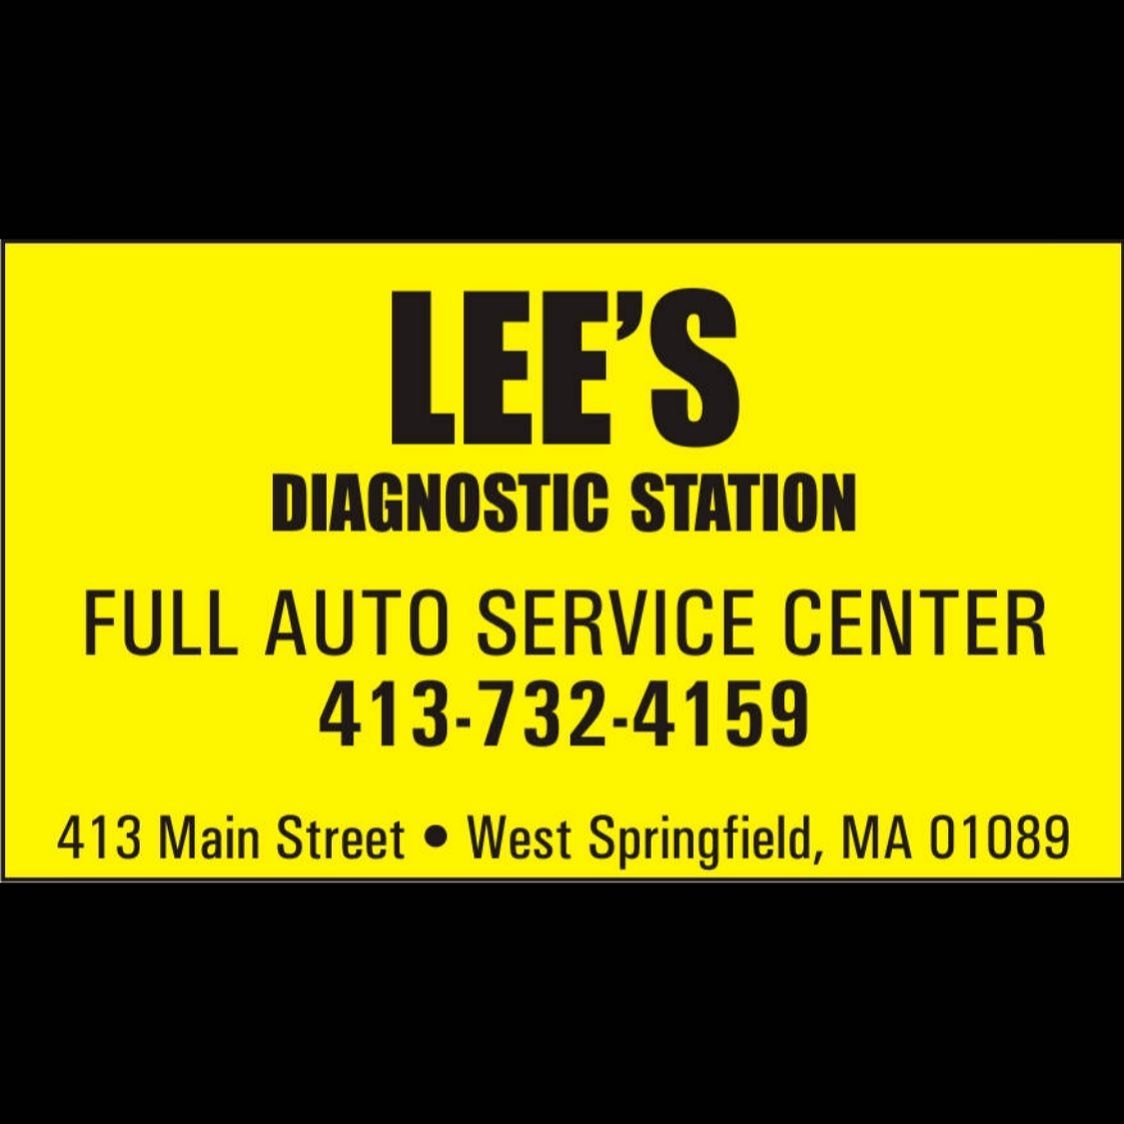 Lee's Diagnostic Station